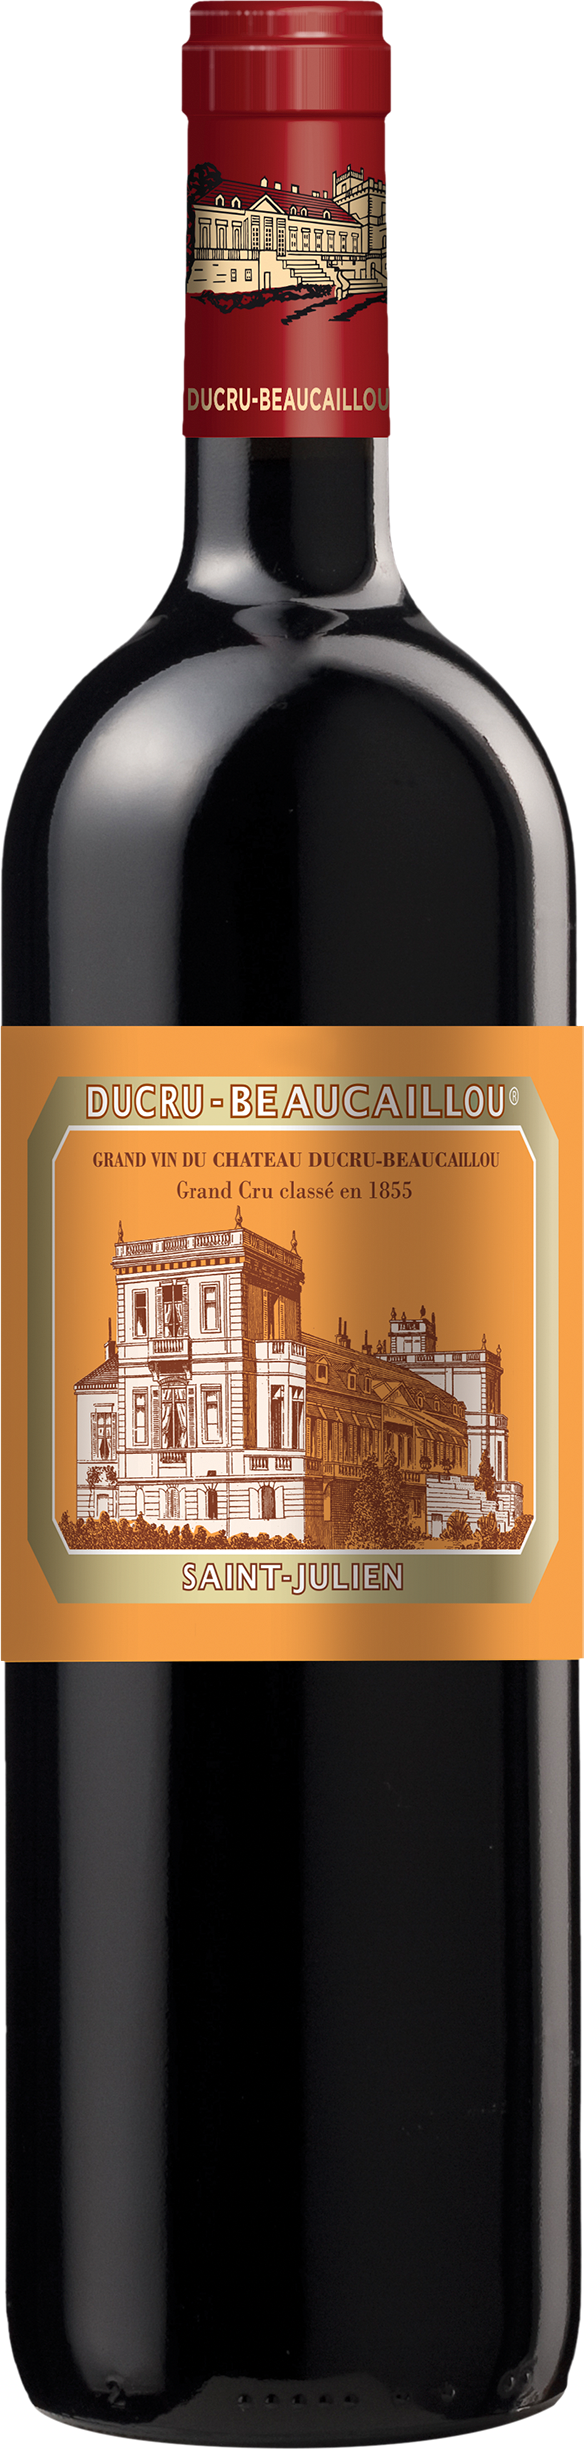 Köstlichalkoholisches - Château Ducru Beaucaillou - Onlineshop Ludwig von Kapff